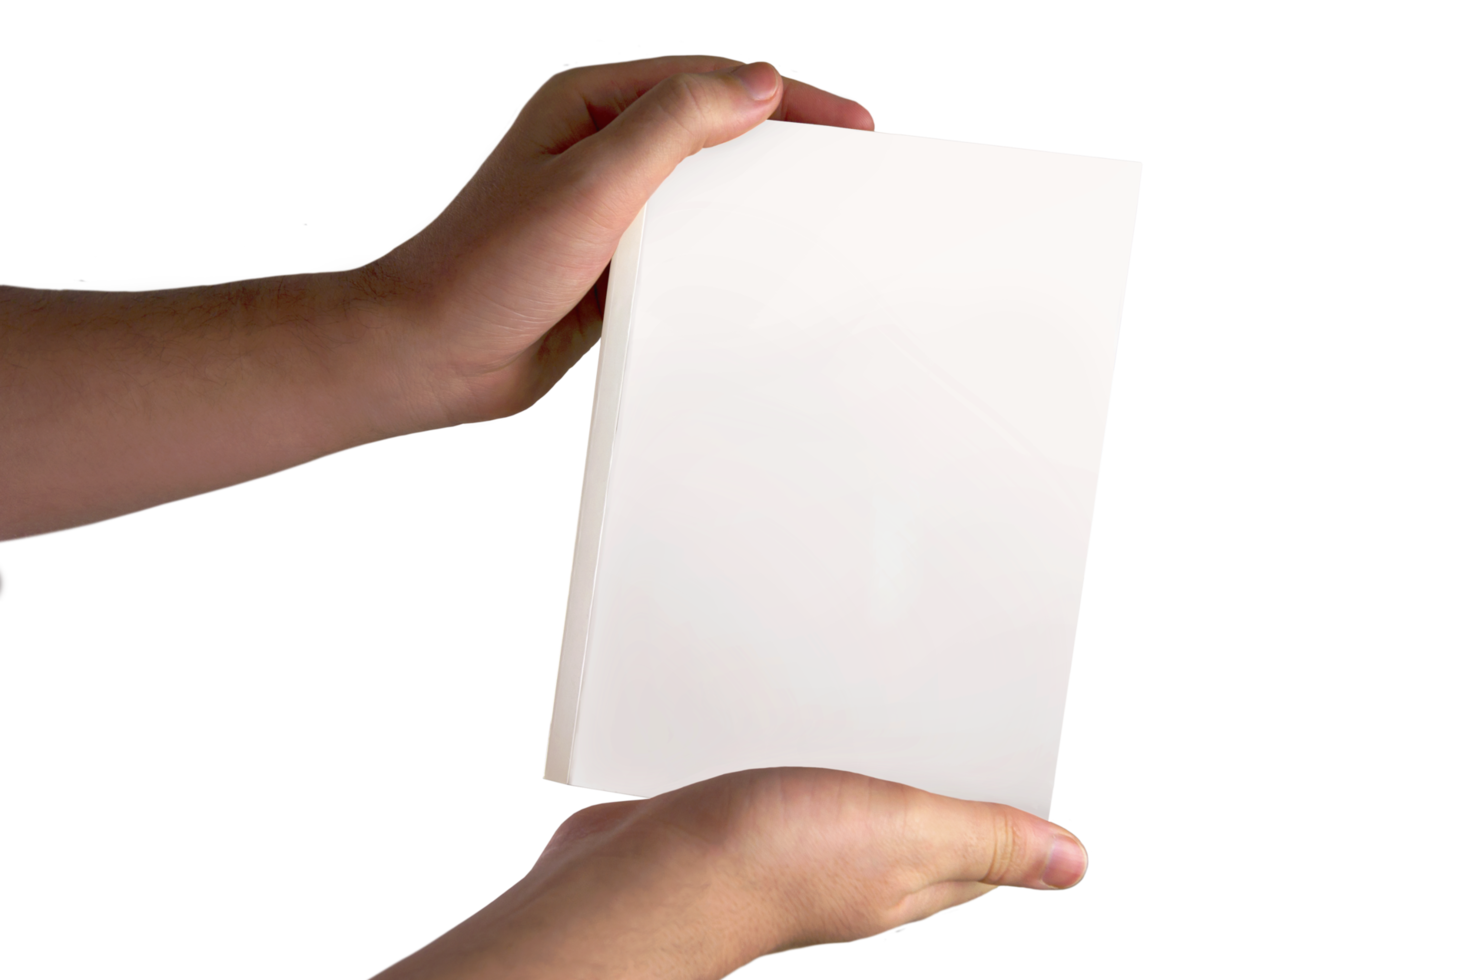 enkel vit bok i händer på transparent bakgrund png